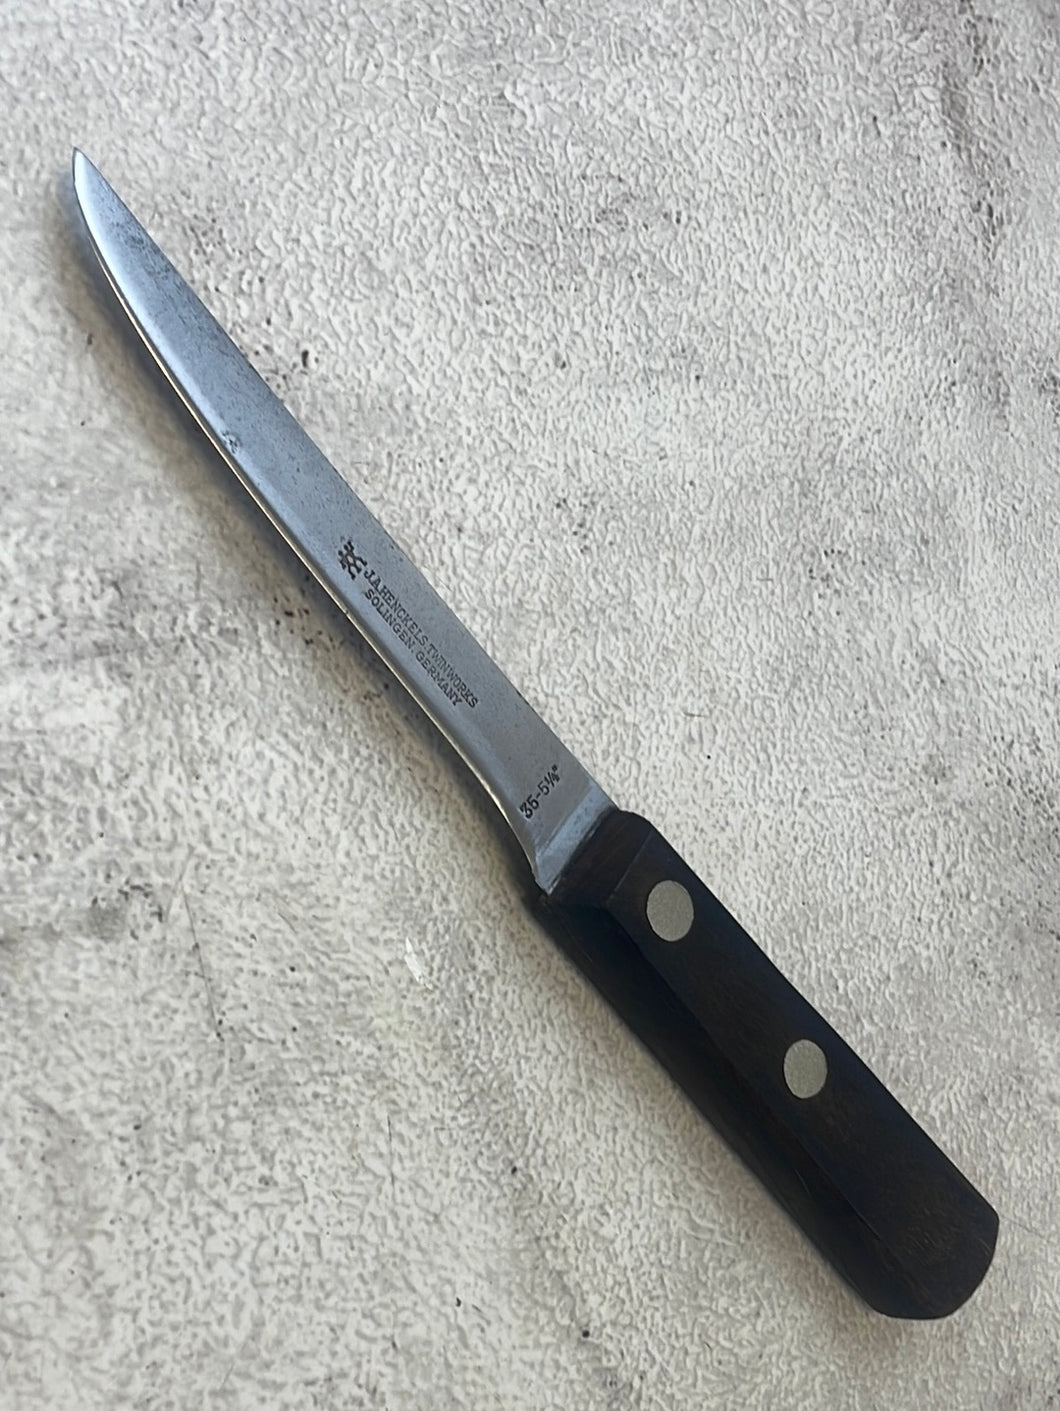 Vintage J. A. Henckles Boning Knife 130mm Carbon Steel Made in Germany 🇩🇪 1266